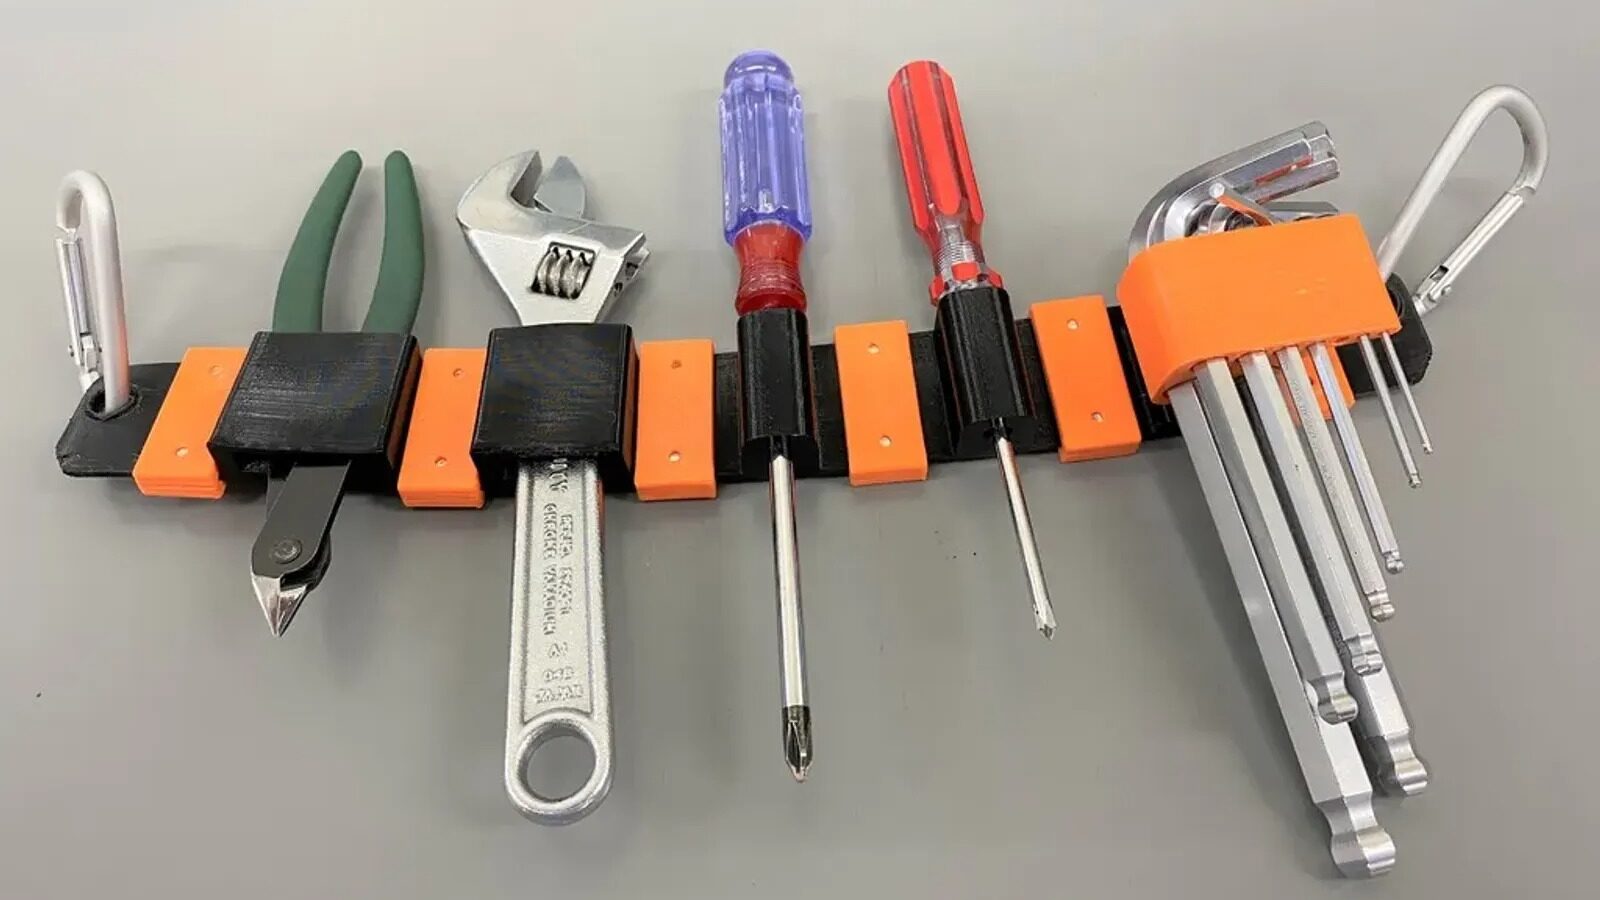 2 Pieces of Rubber Tip Tweezers PVC Silicone Precision Tweezers Laboratory  Industrial Craft Tweezers Tool-Red 